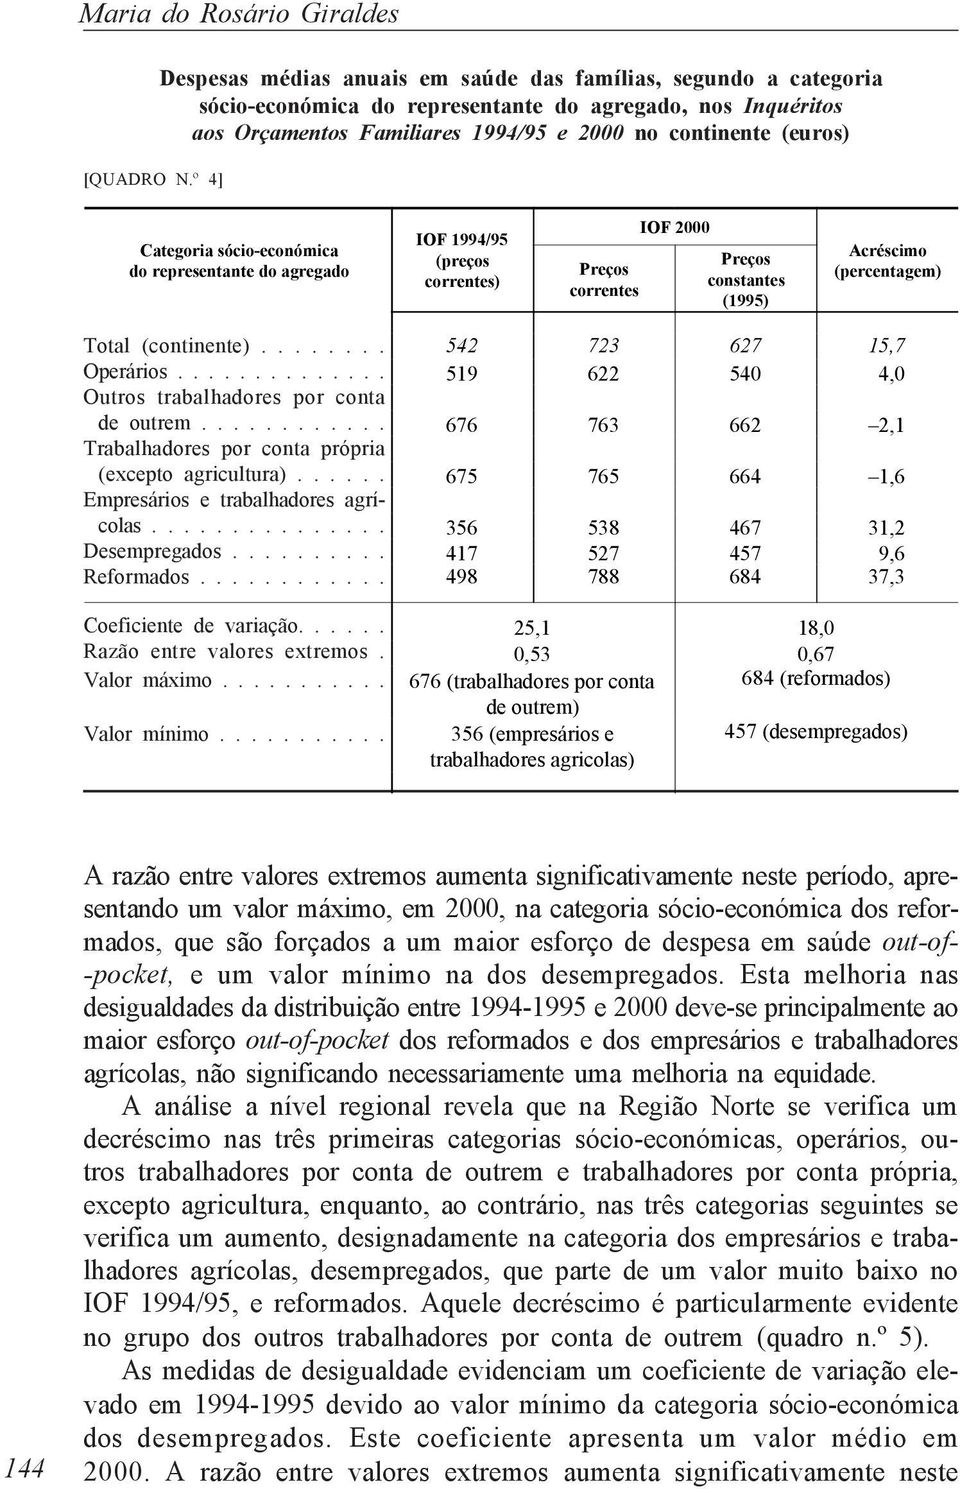 Categoria sócio-económica do representante do agregado IOF 1994/95 (preços correntes) Preços correntes IOF 2000 Preços constantes (1995) Acréscimo (percentagem) Total (continente)........ Operários.